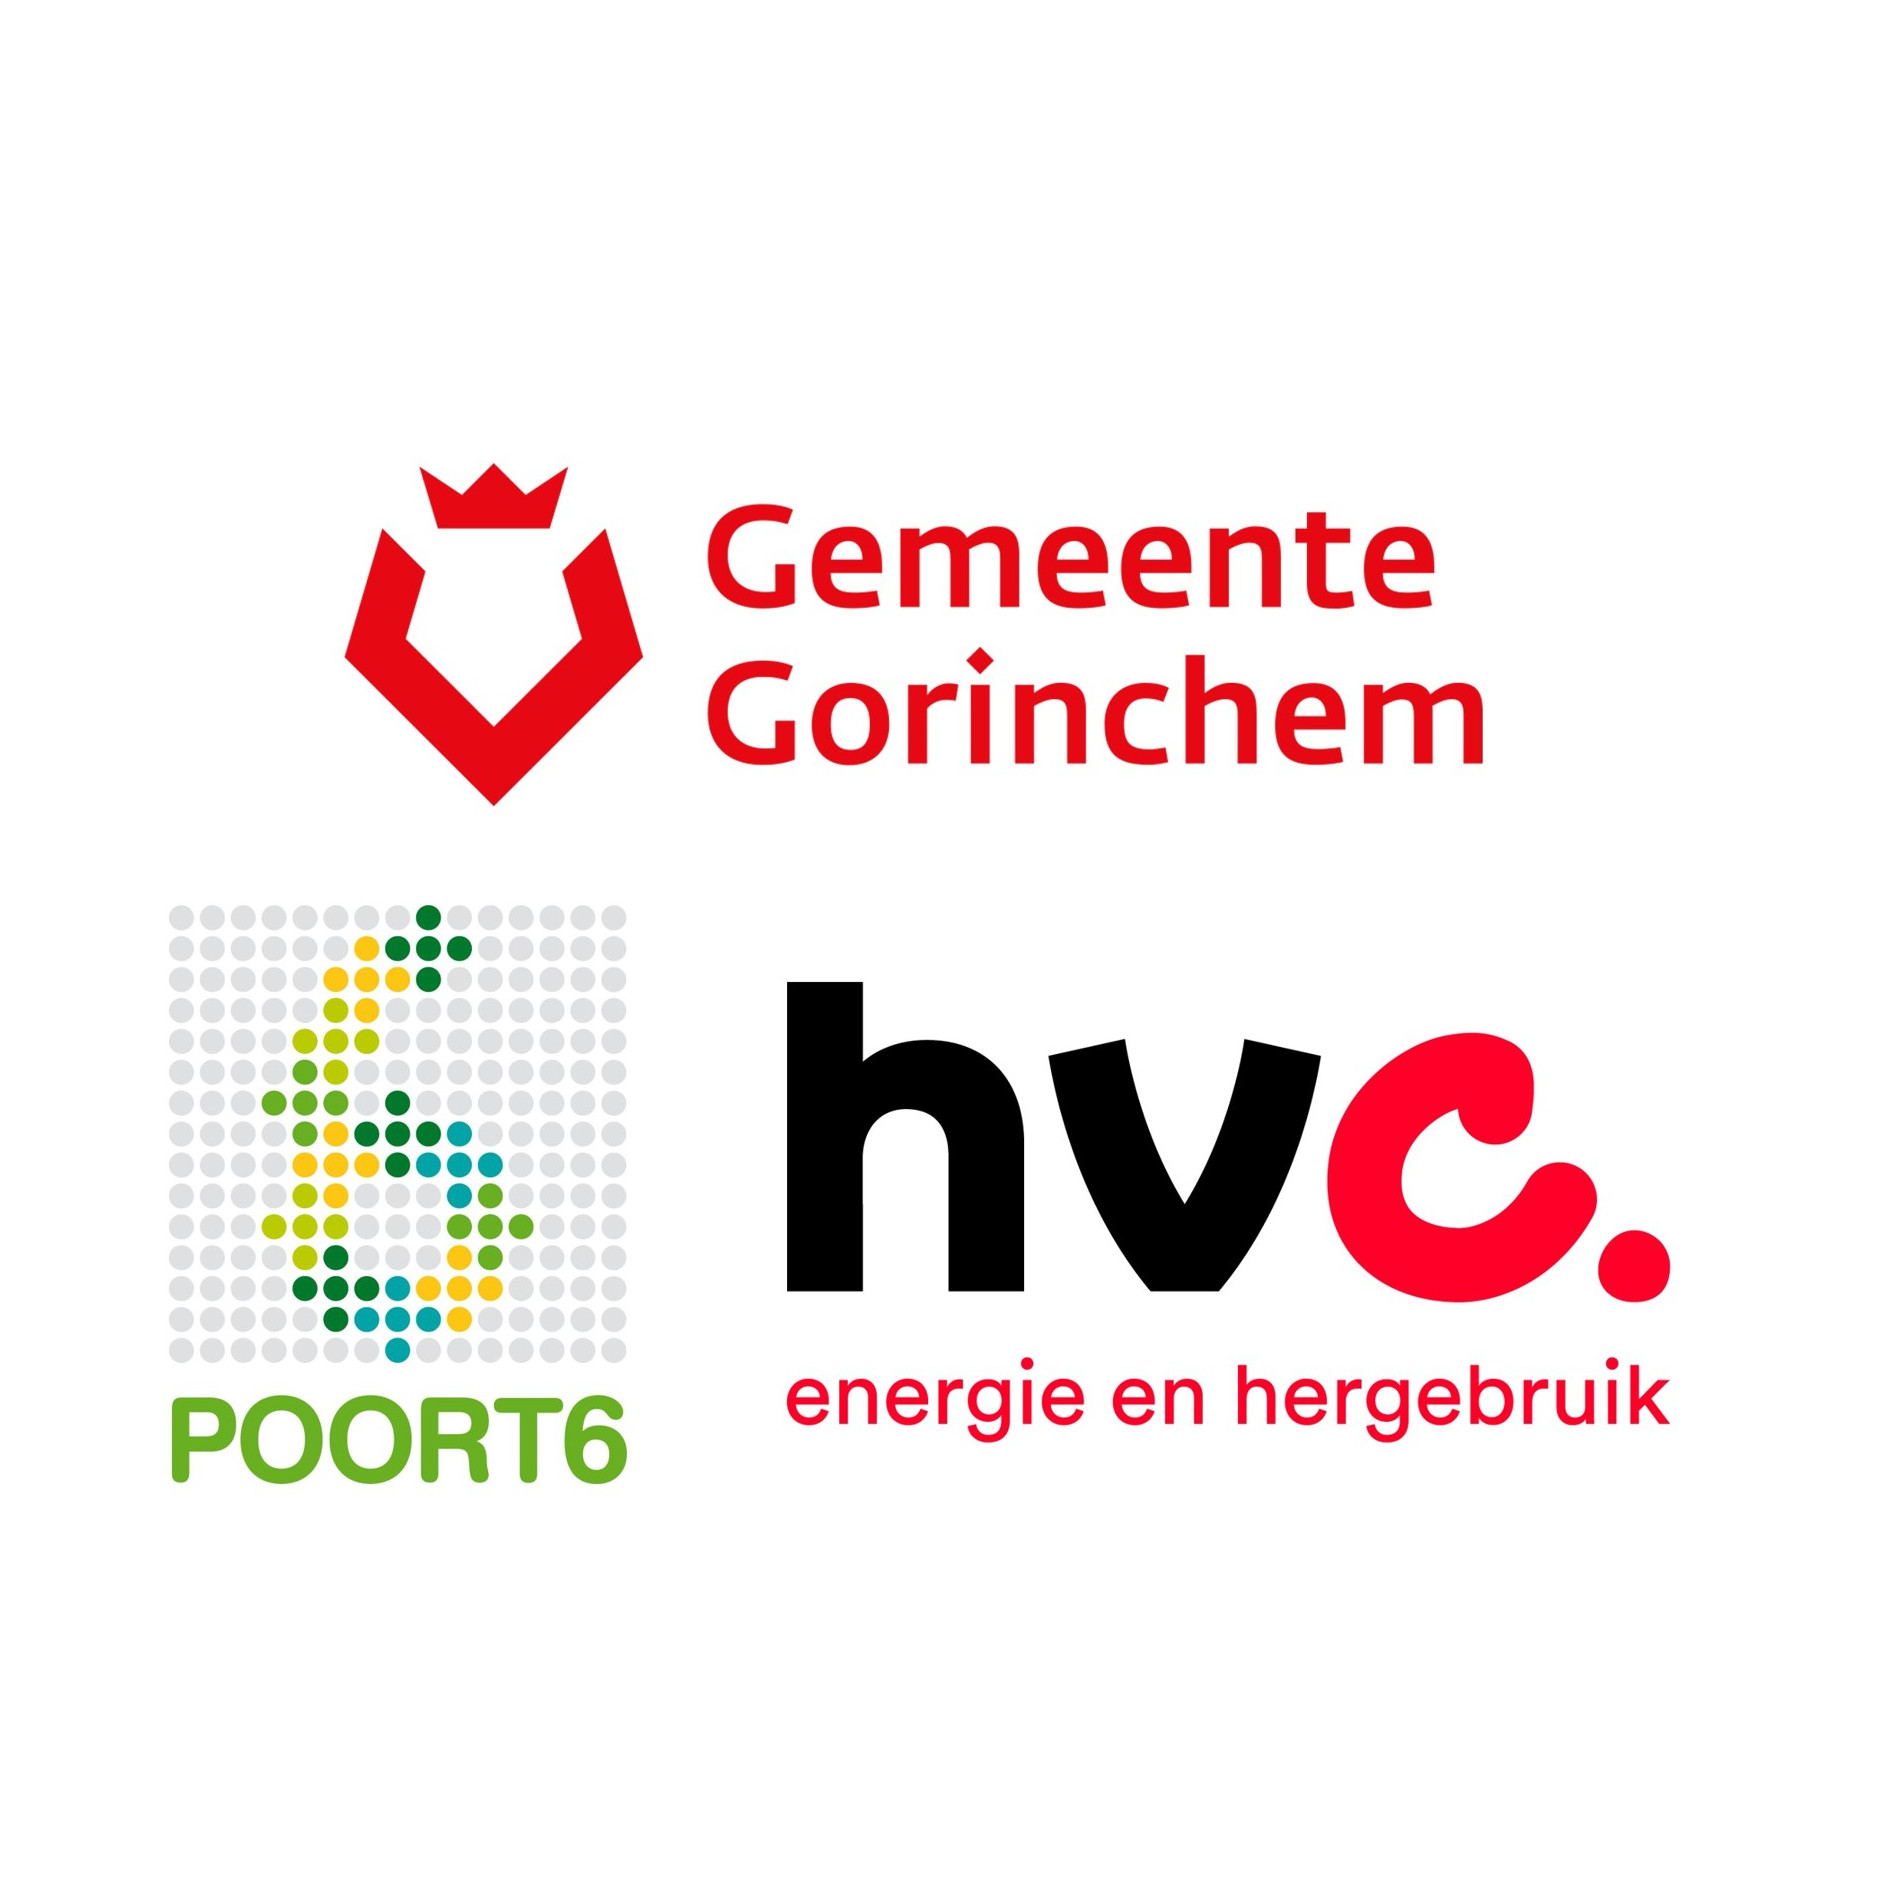 Logo's van de projectpartners (gemeente Gorinchem, Poort6 en HVC) die het warmtenet aanleggen